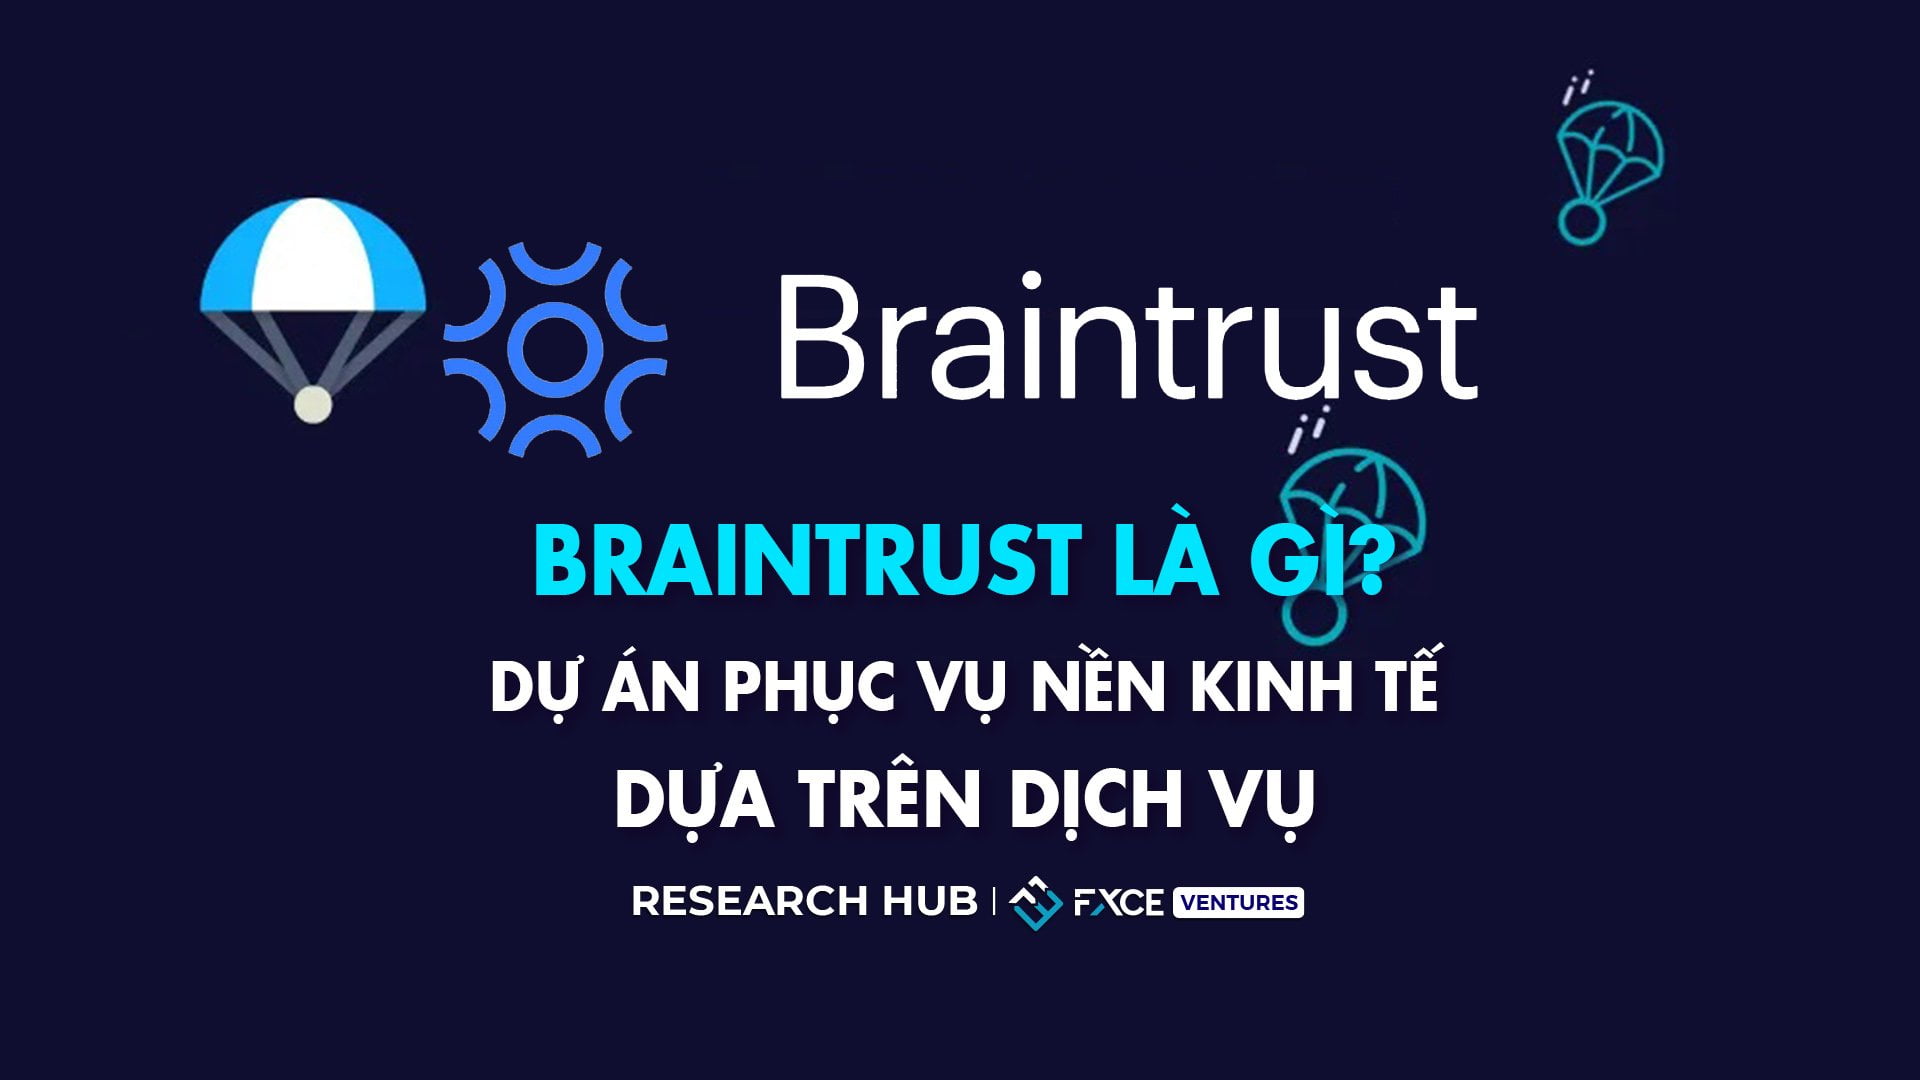 Braintrust là gì? Dự án phục vụ nền kinh tế dựa trên dịch vụ